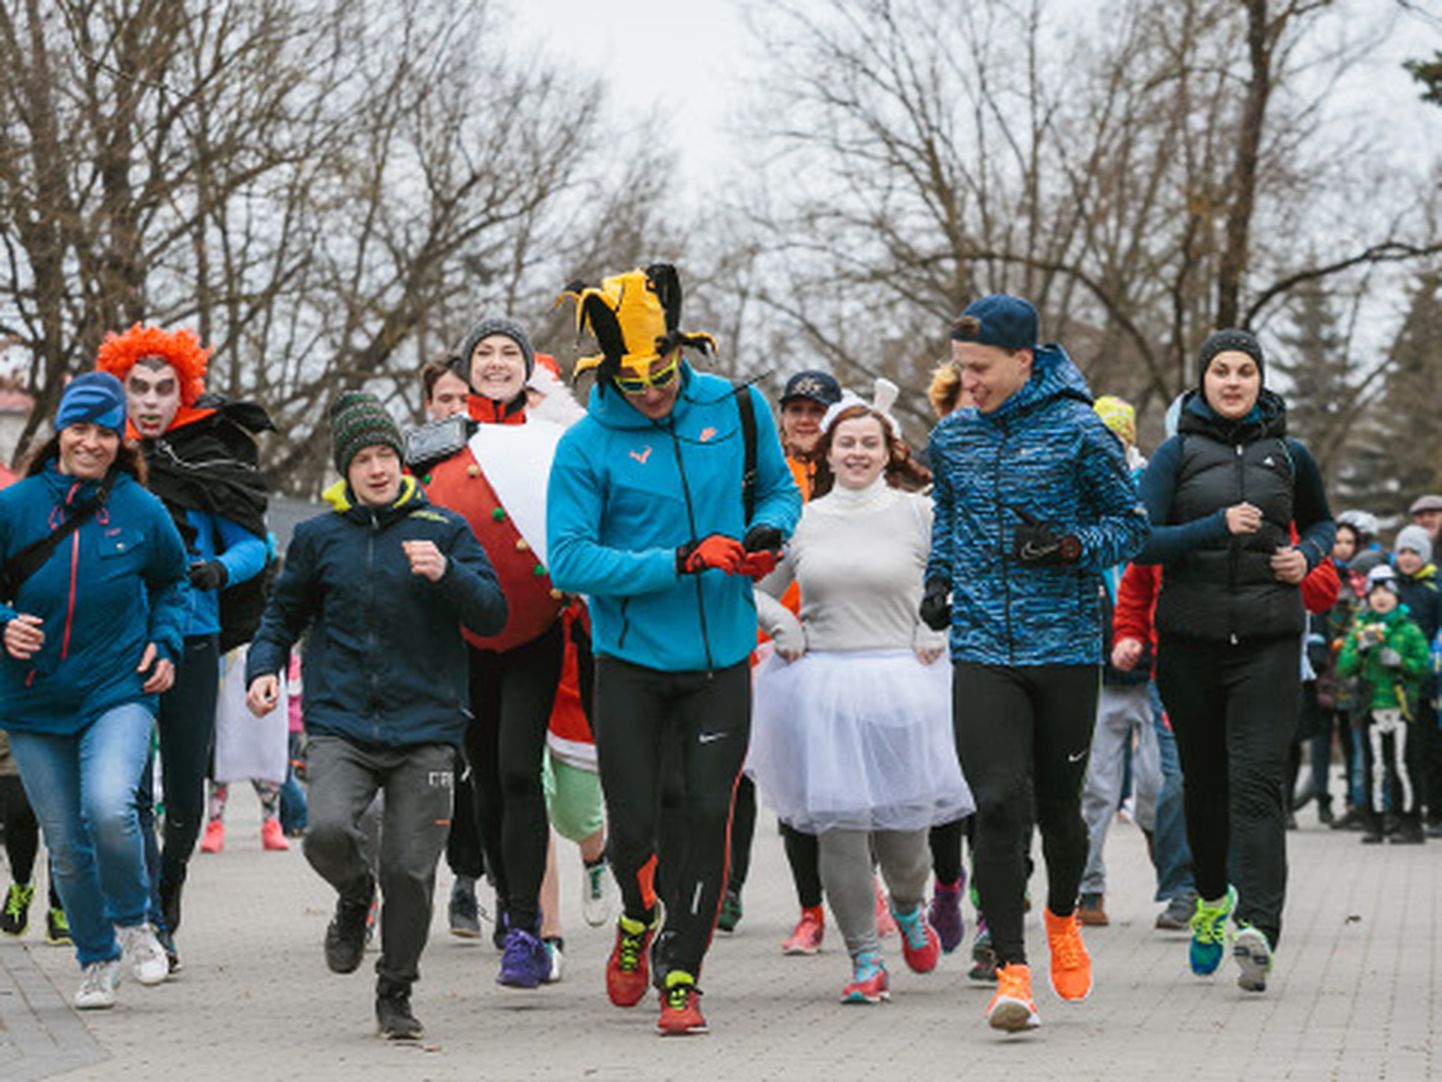 Ida-Virumaa jooksuhooaja proloog oli 1. aprillil Narva kesklinnas toimunud Lõbus jooks, mis sarnanes pigem karnevali kui võidulidumisega. Esimene tõsisem võistlus on aga juba eeloleval laupäeval, kui joostakse Pagari mõisast Mäetaguse mõisa. 